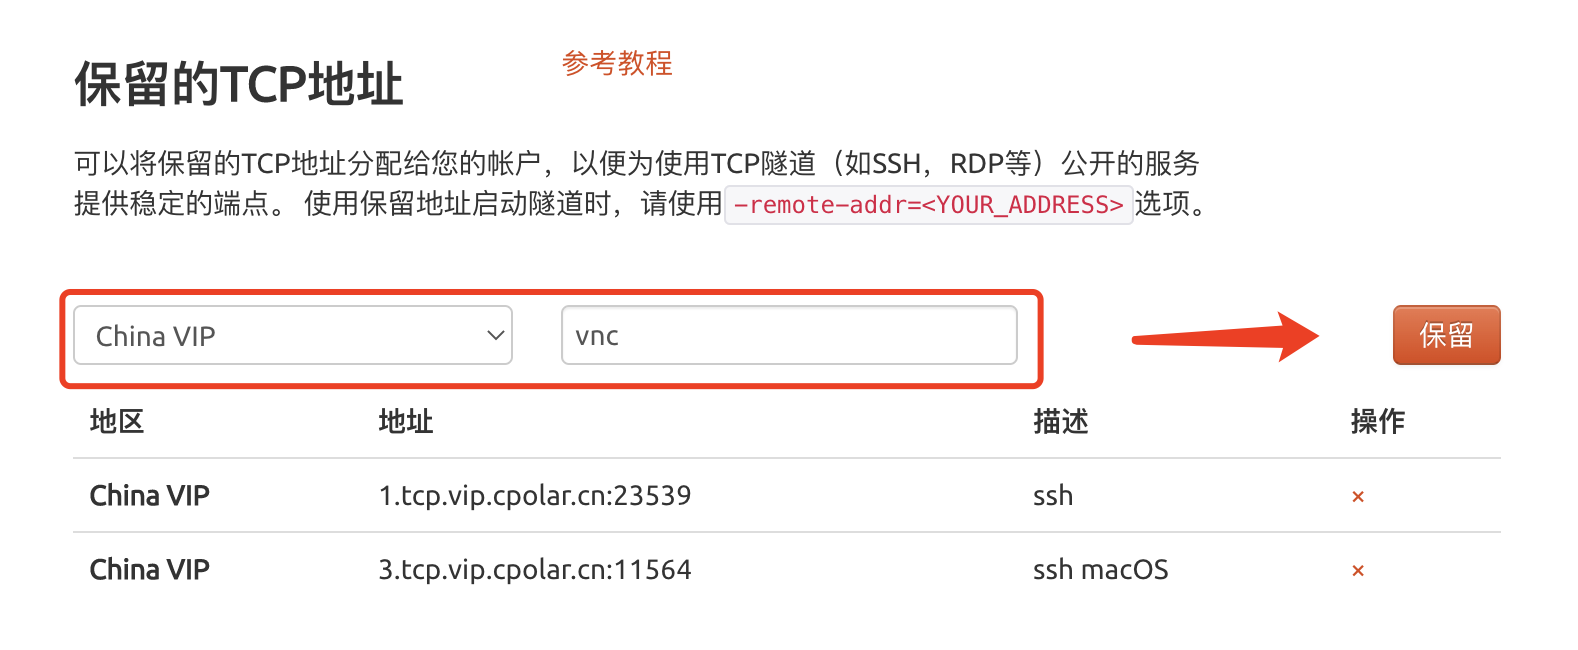 使用mac自带VNC公网远程控制macOS,20221230111317,第18张